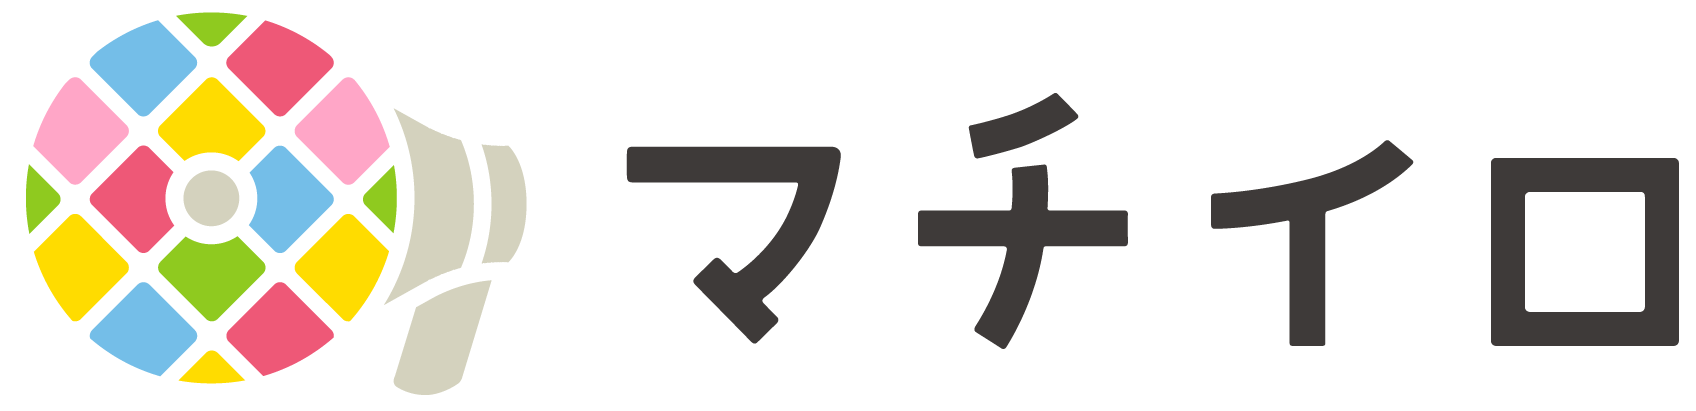 スマートフォンアプリ「マチイロ」のロゴ